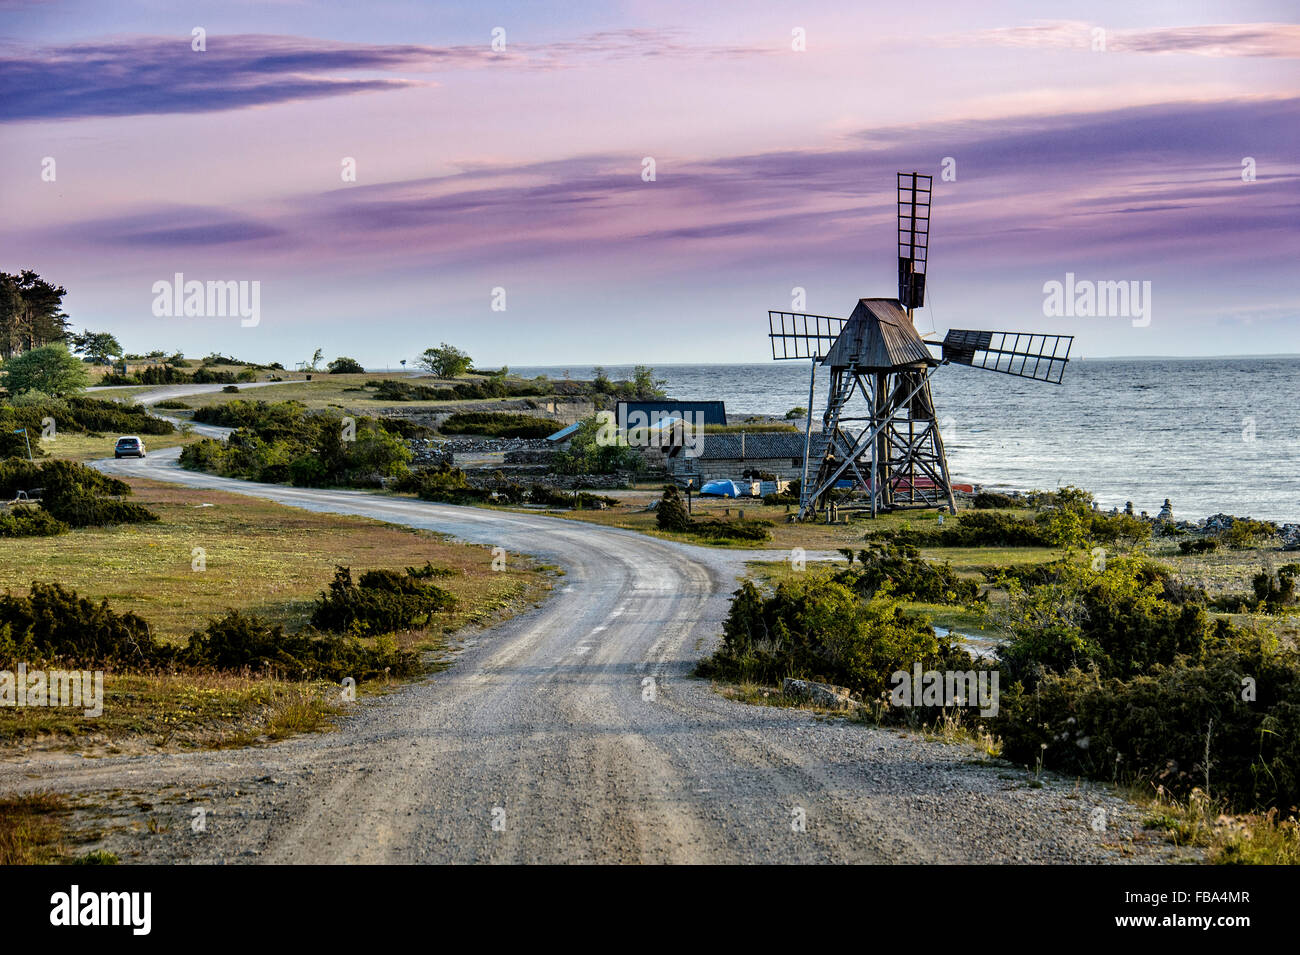 Schweden, Öland, Windmühle zwischen Meer und kurvenreiche Straße Stockfoto